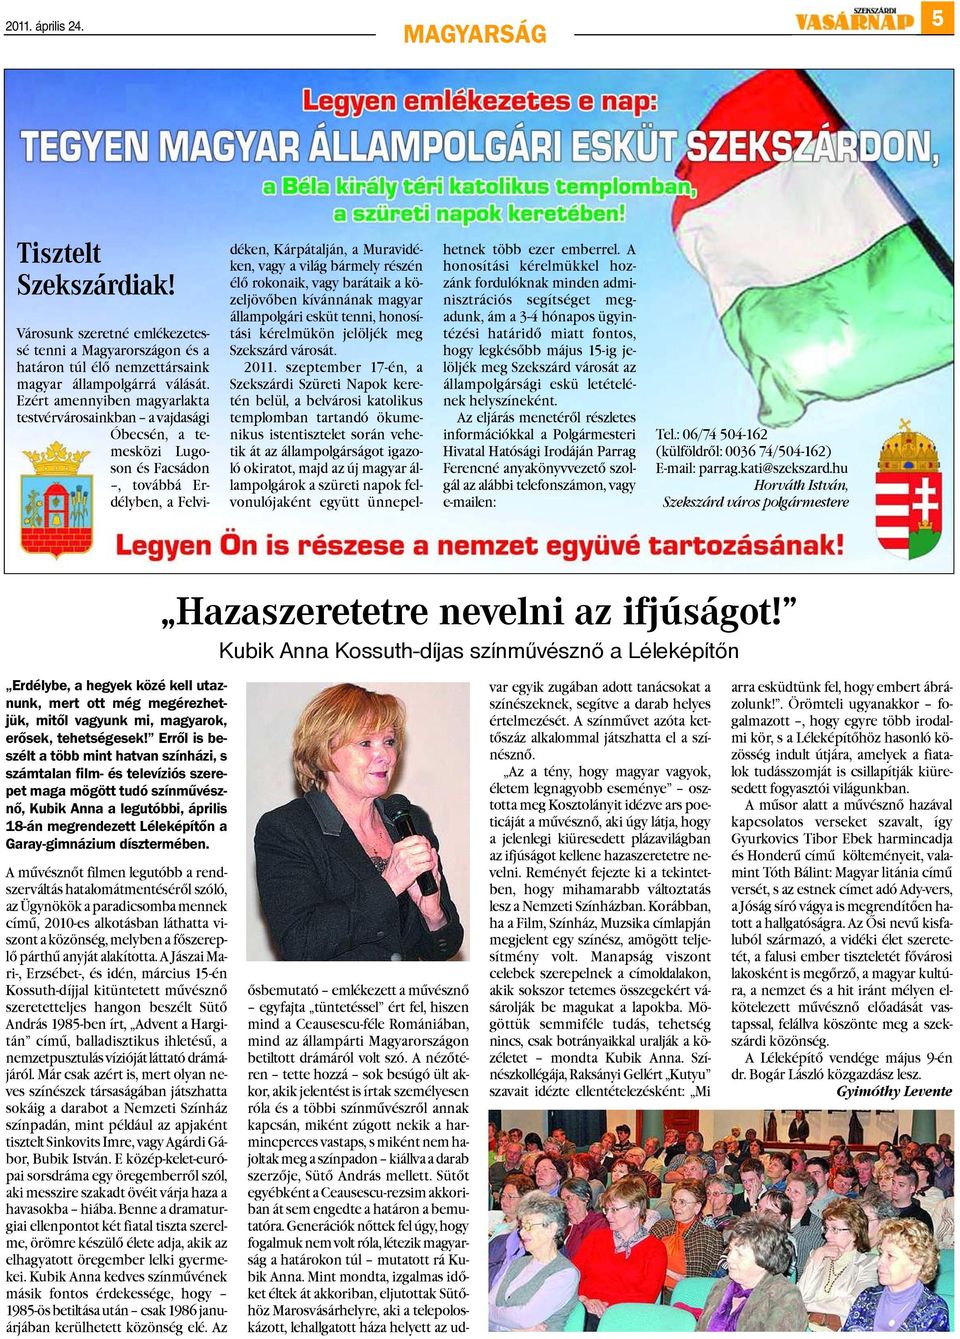 rokonaik, vagy barátaik a közeljövõben kívánnának magyar állampolgári esküt tenni, honosítási kérelmükön jelöljék meg Szekszárd városát. 2011.